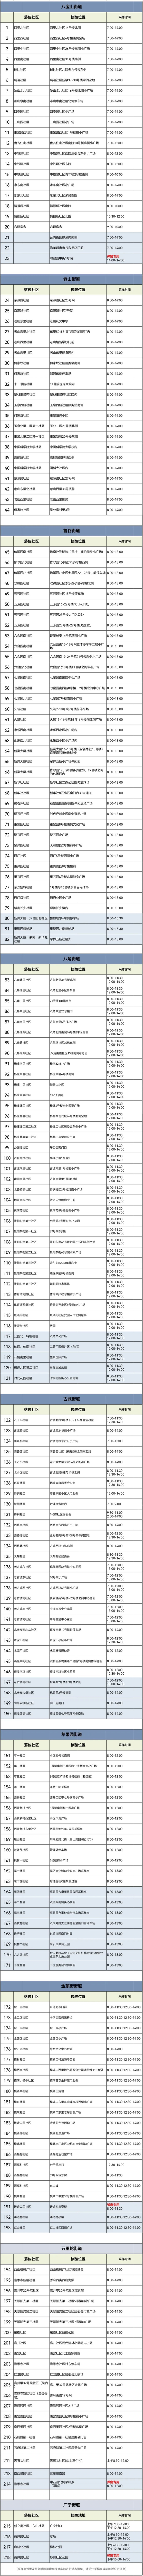 北京昨日新增本土新冠感染者1282＋3240含社会面609例歌曲说走就走一回